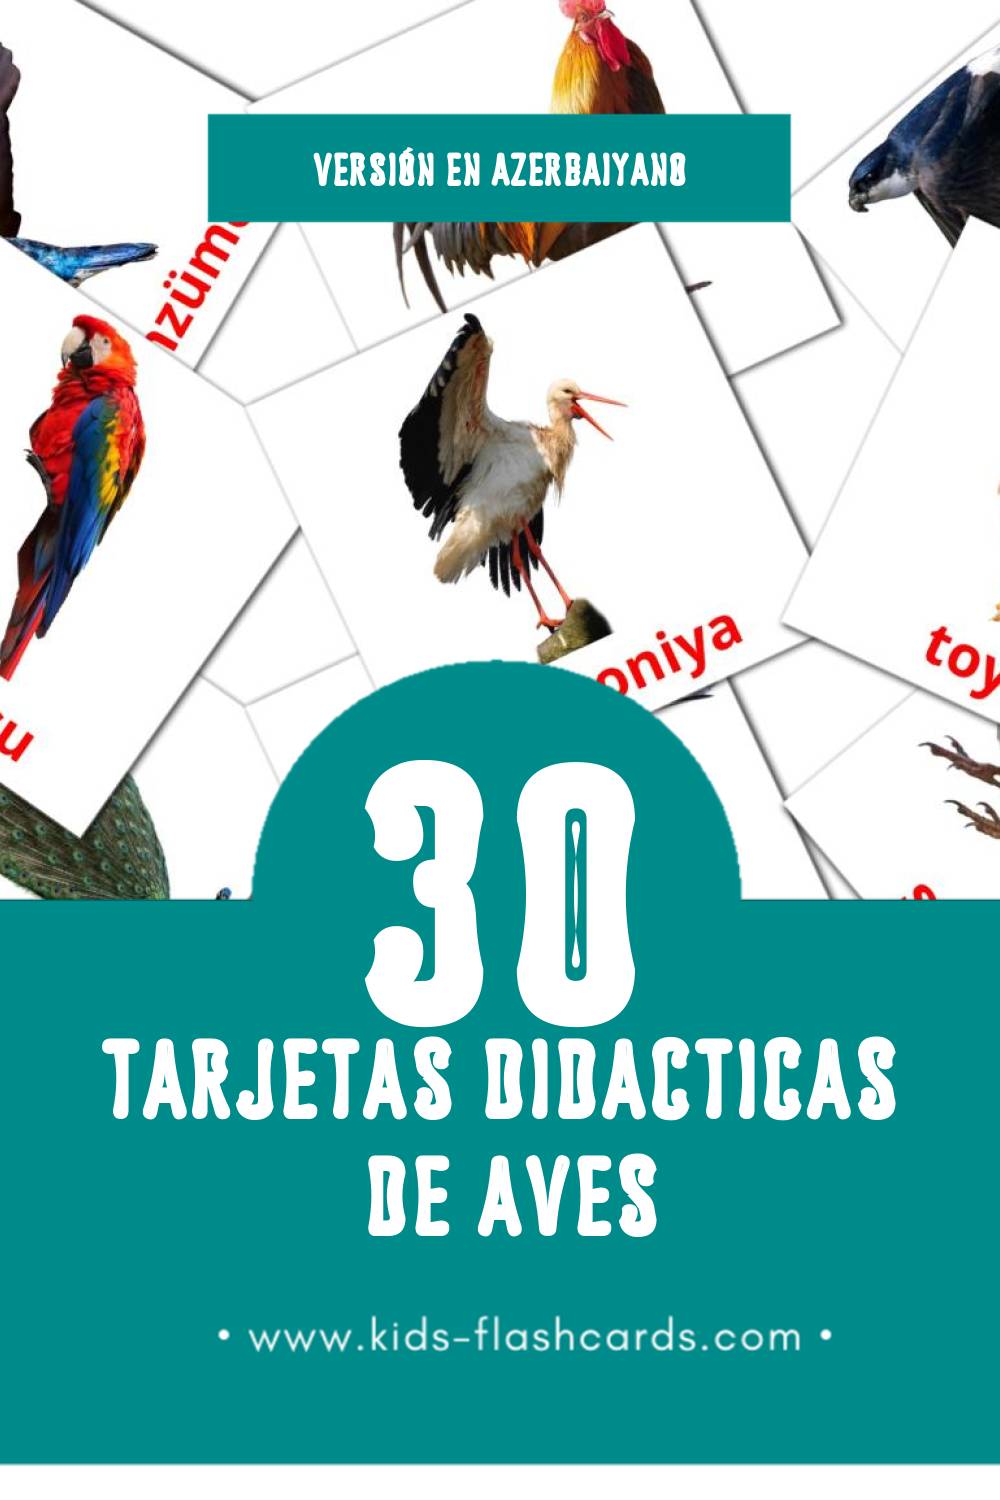 Tarjetas visuales de Quşlar para niños pequeños (30 tarjetas en Azerbaiyano)